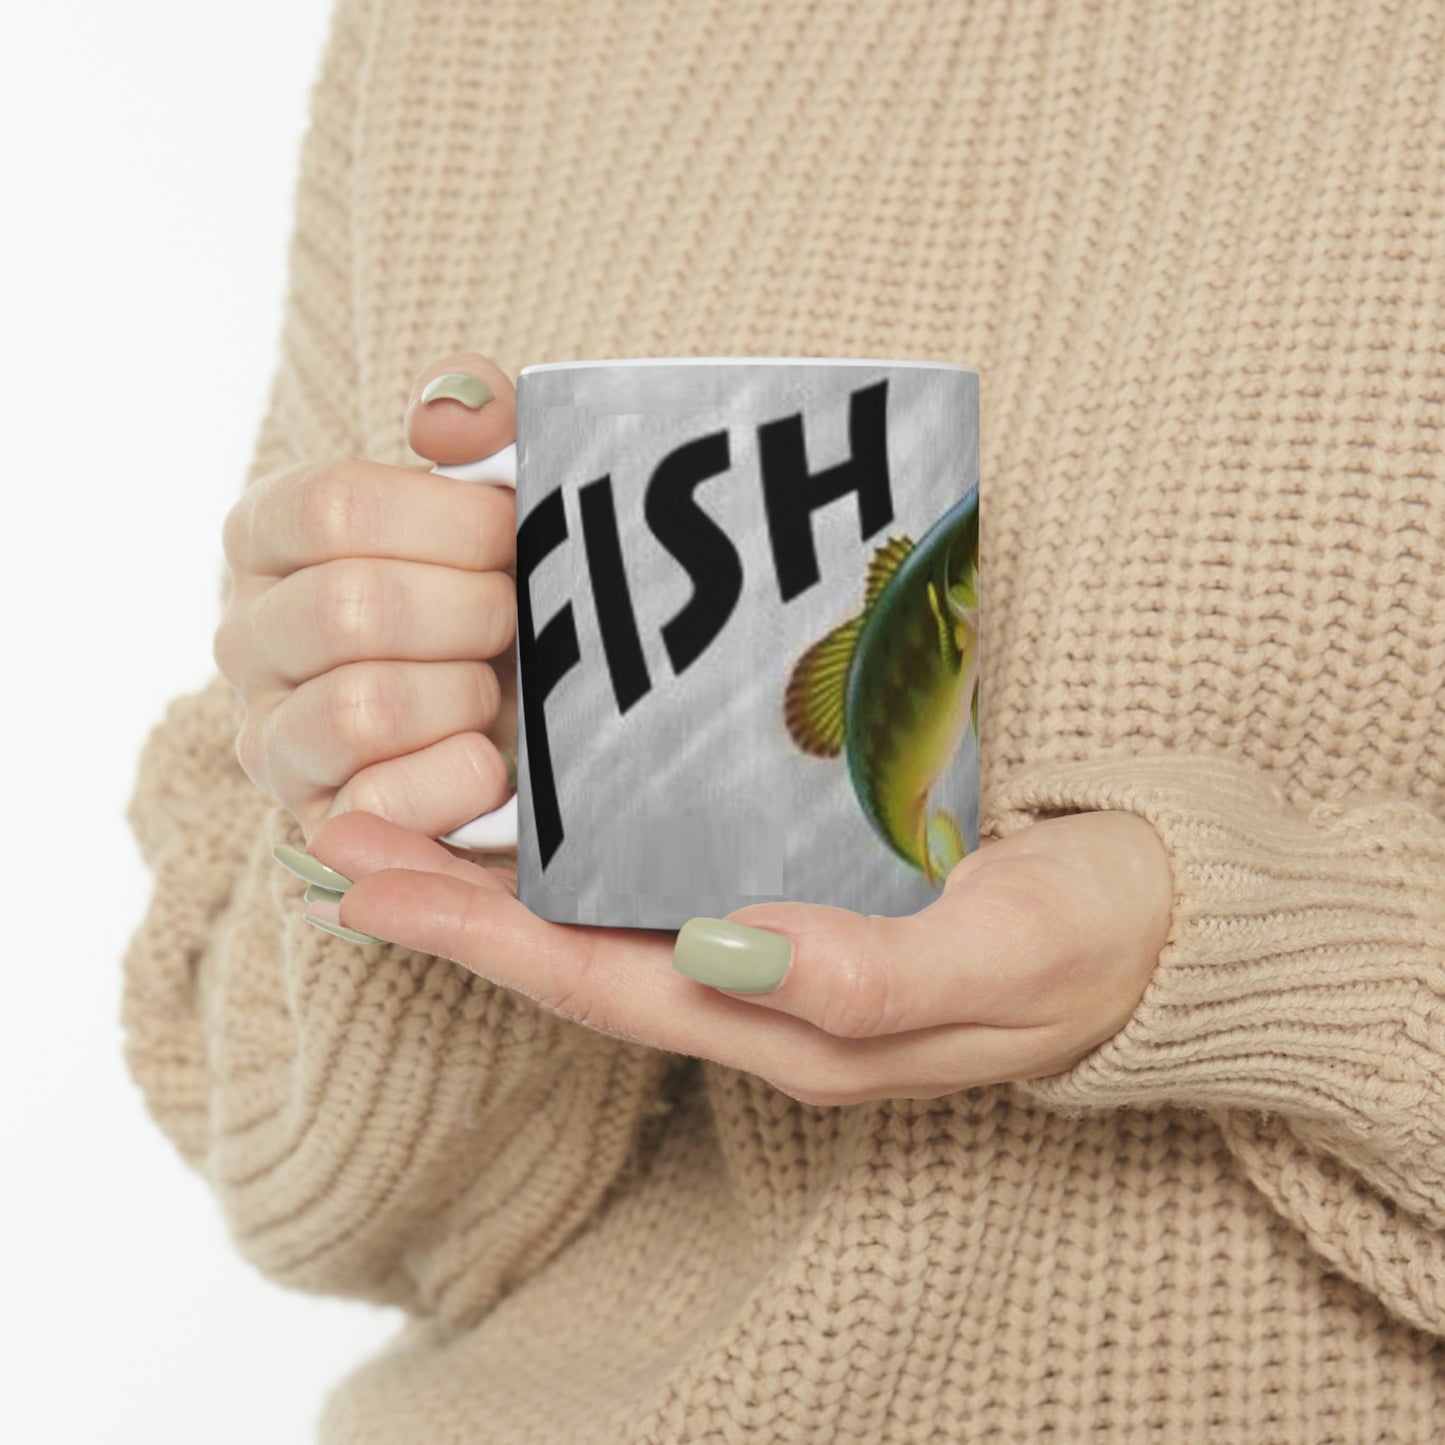 Fish-On Fishermans Ceramic Mug 11oz